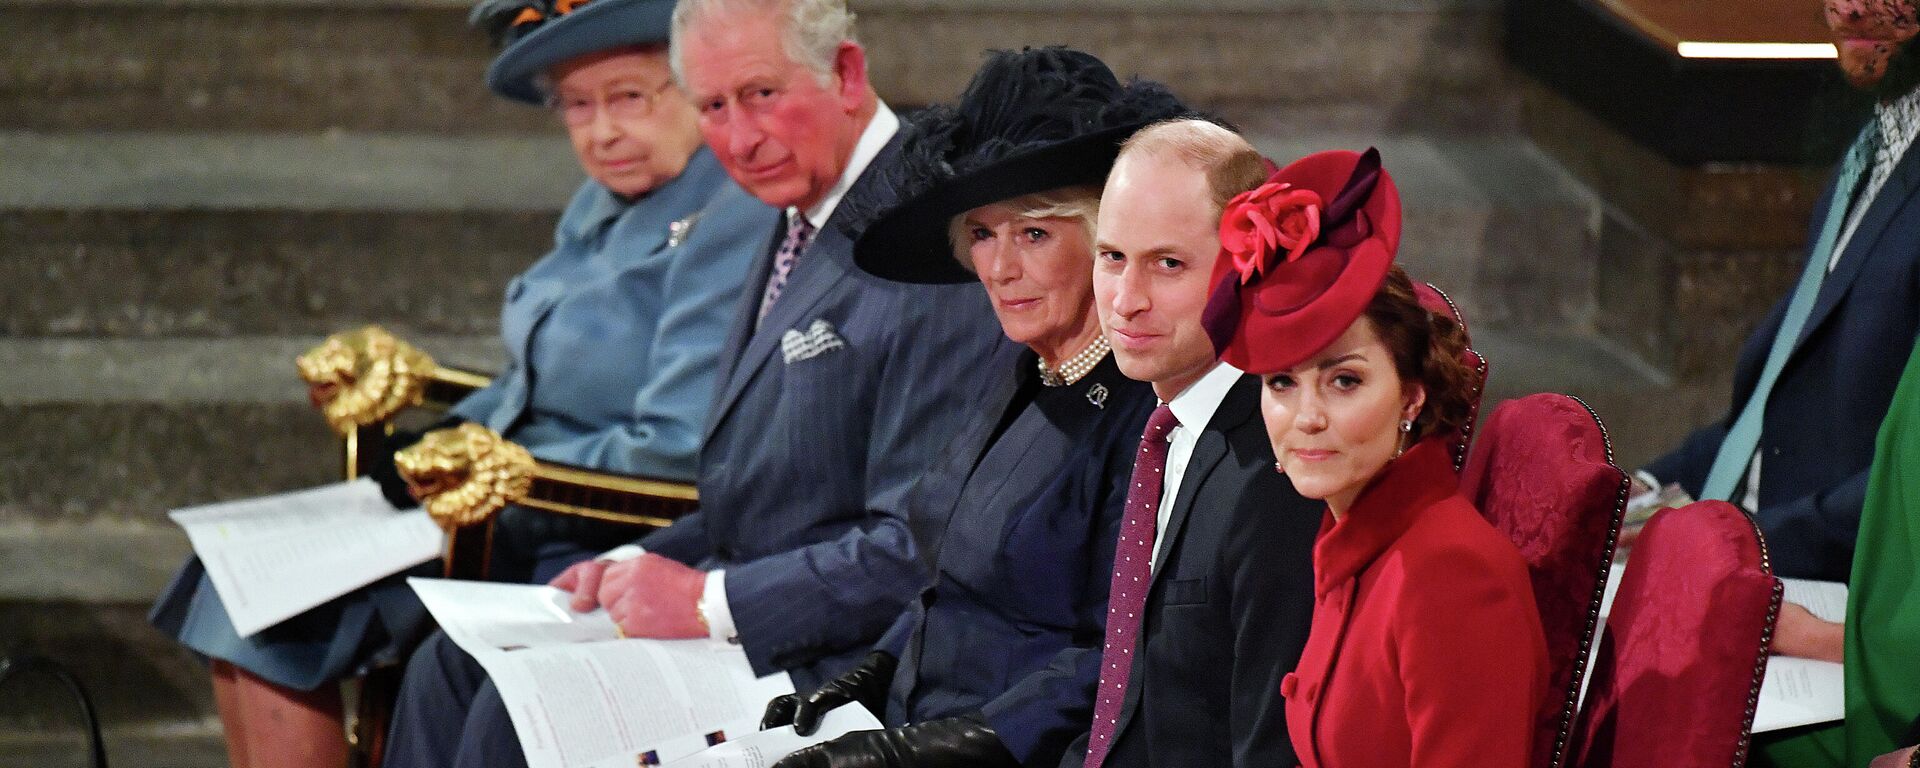 La reina Isabel II, el príncipe Carlos, Camilla, la duquesa de Cornwall, el príncipe William y 
Kate Middleton, la duquesa de Cambridge - Sputnik Mundo, 1920, 09.03.2021